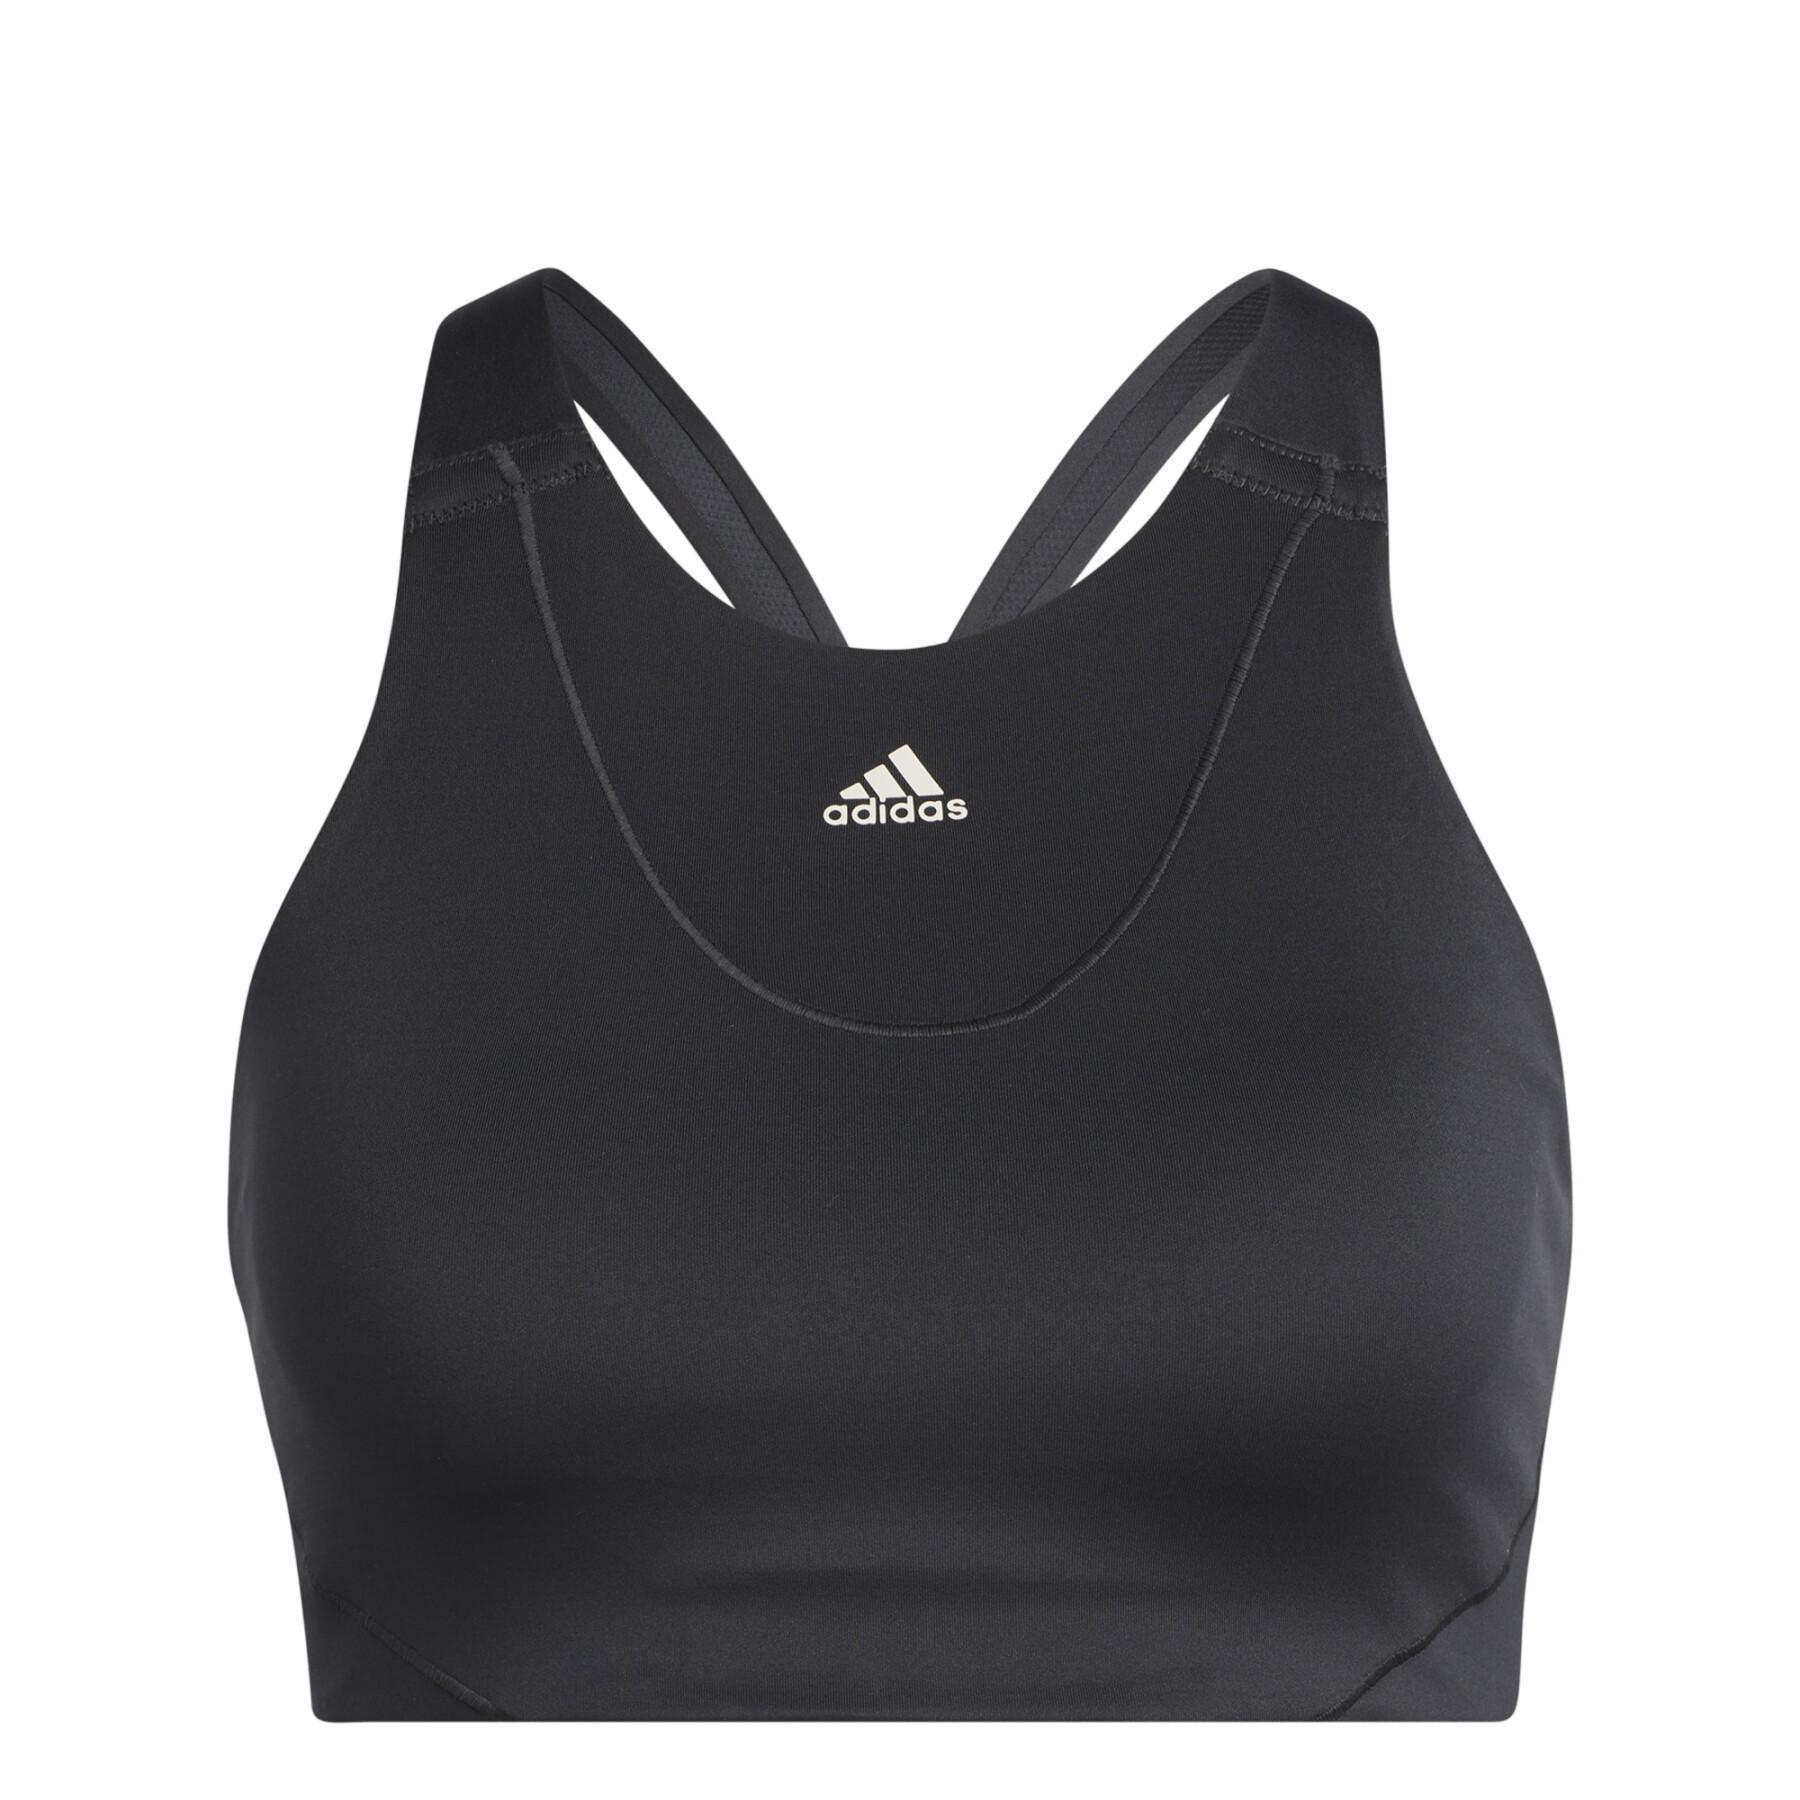 adidas medium support high neck yoga bra in grey